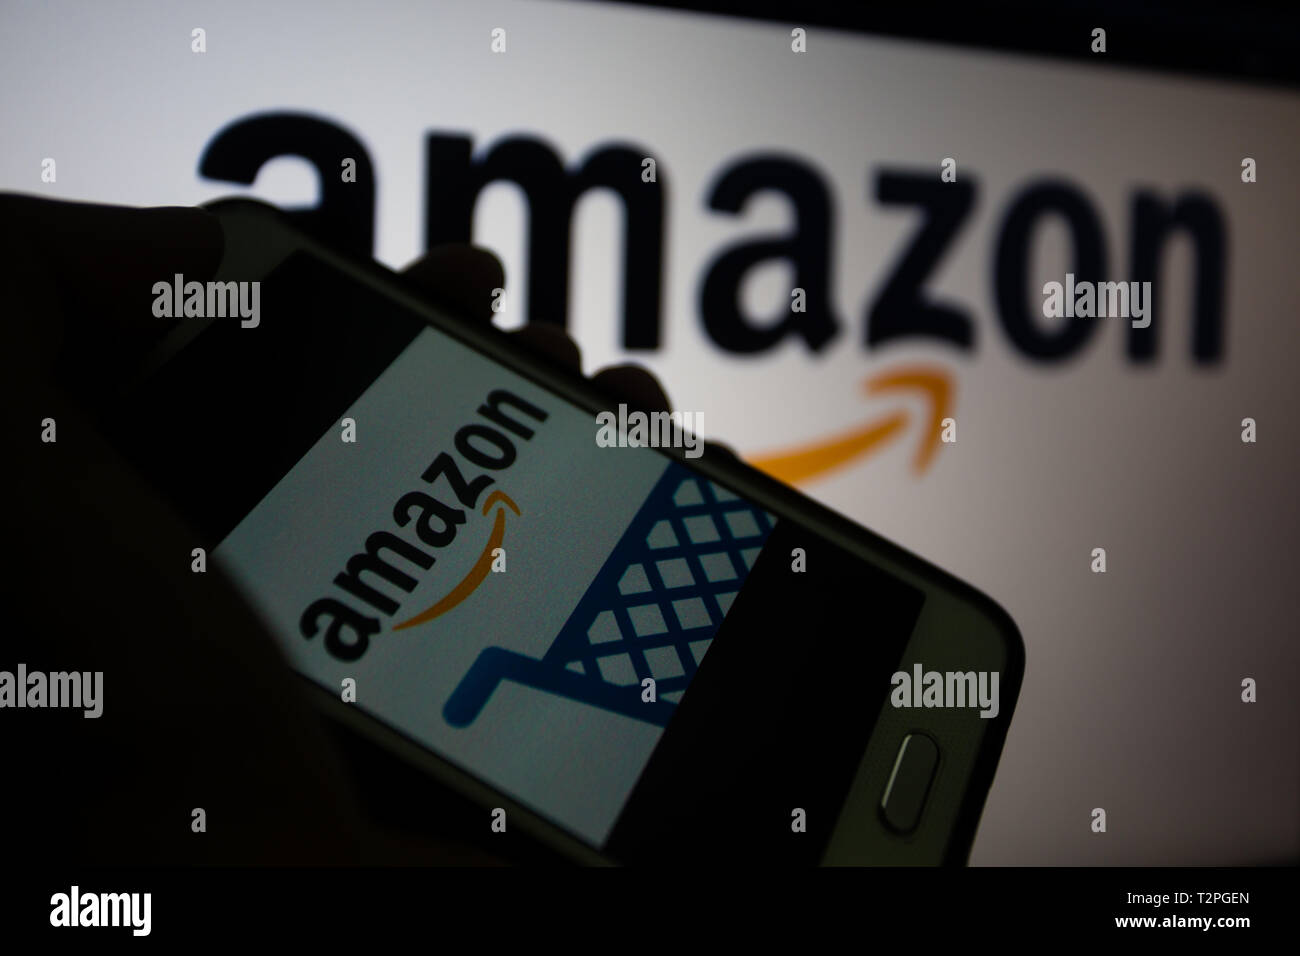 Amazon.com, amerikanischen multinationalen Technologie Unternehmen, das sich auf e-commerce, Logo wird auf dem Smartphone angezeigt, Logo unscharf im Hintergrund konzentriert sich Stockfoto